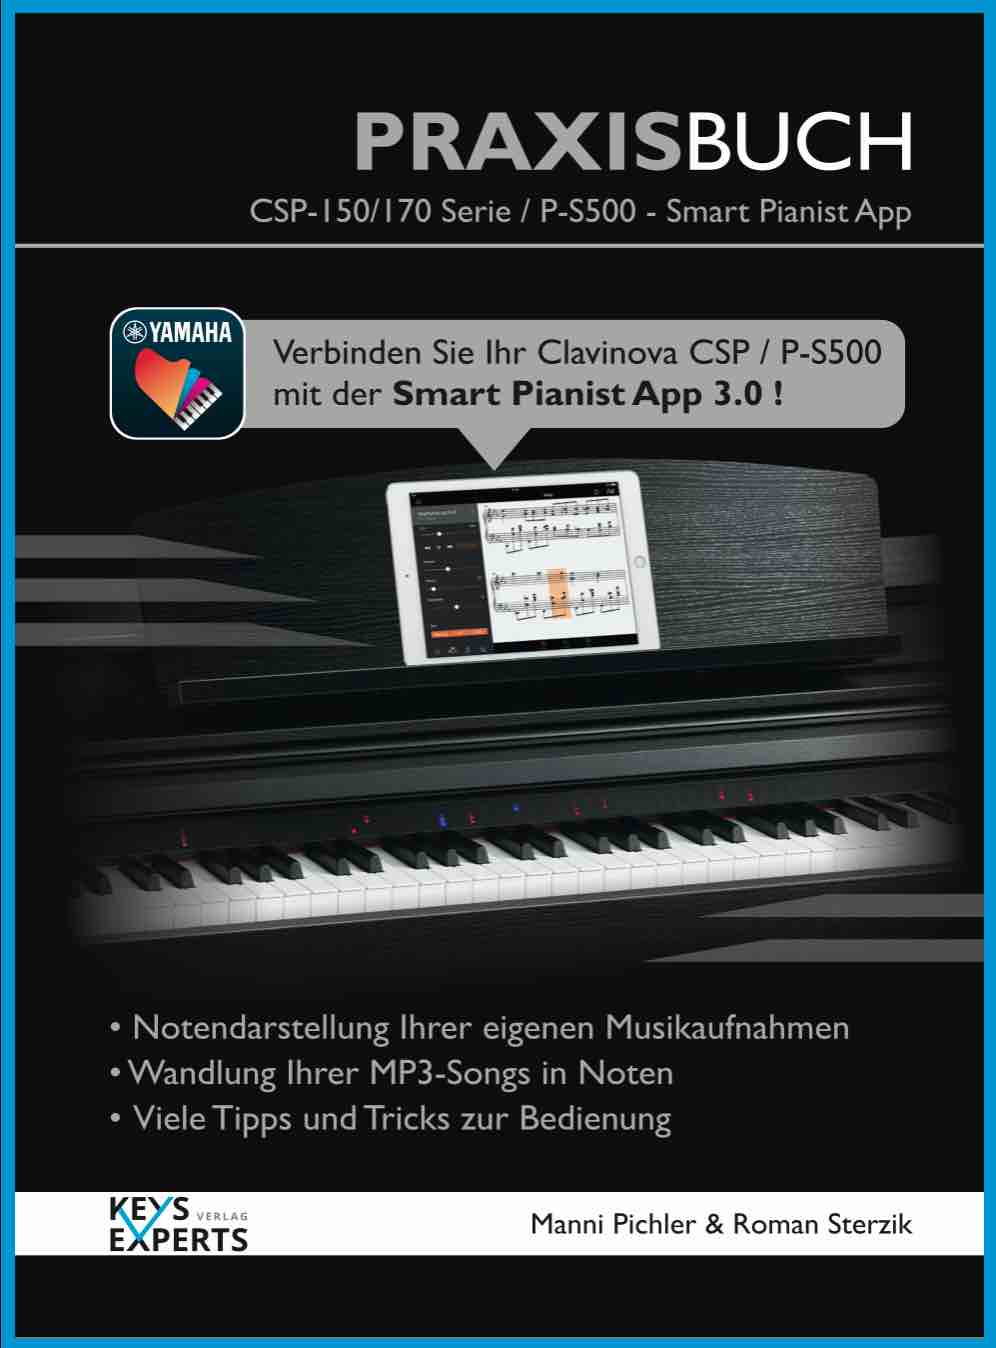 CSP-170/150, PS-500 Smart Pianist Praxisbuch1